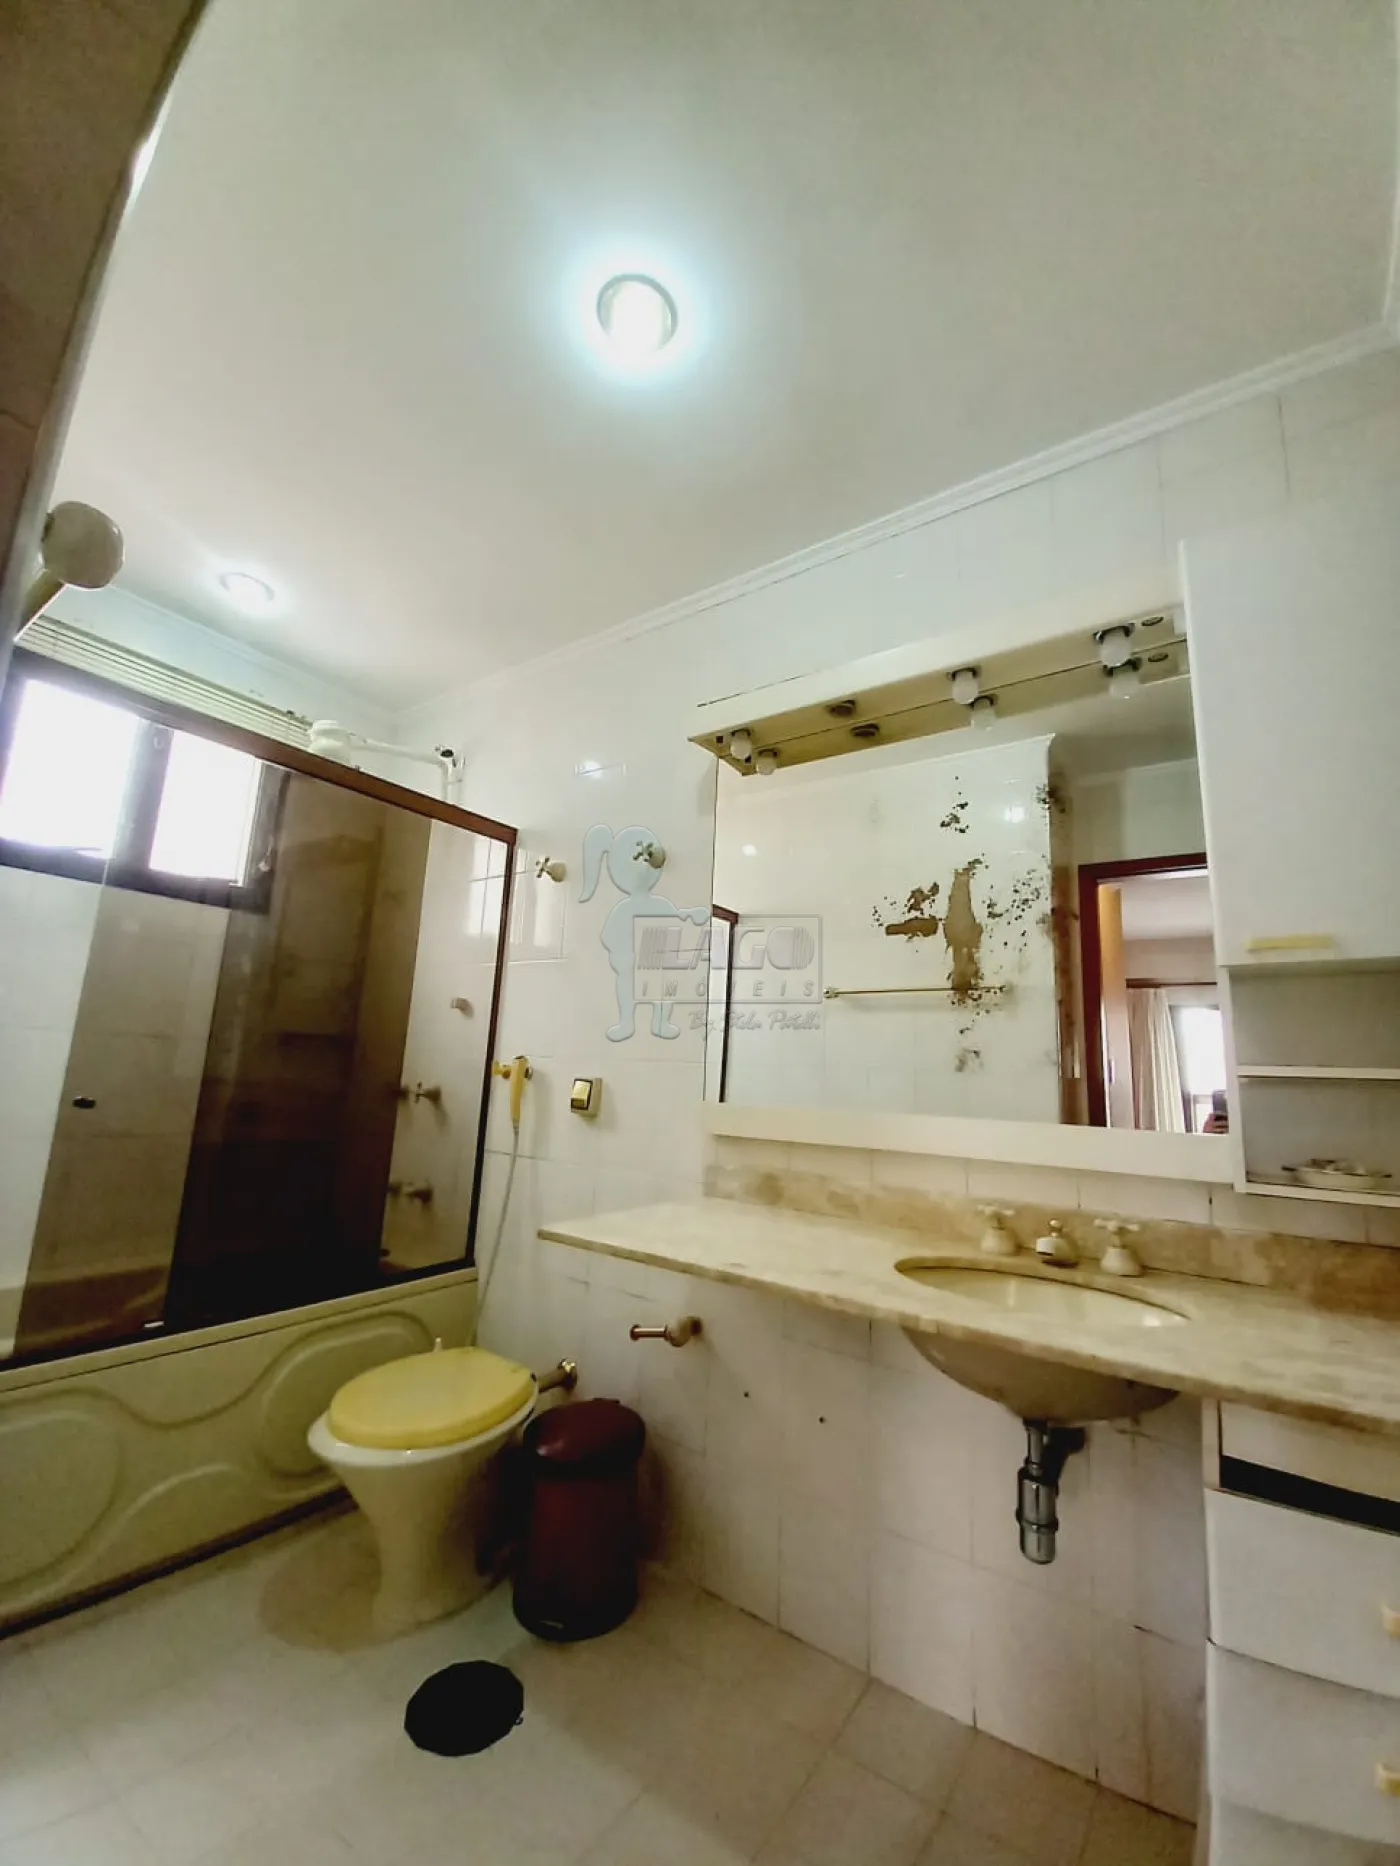 Alugar Apartamentos / Padrão em Ribeirão Preto R$ 3.300,00 - Foto 10